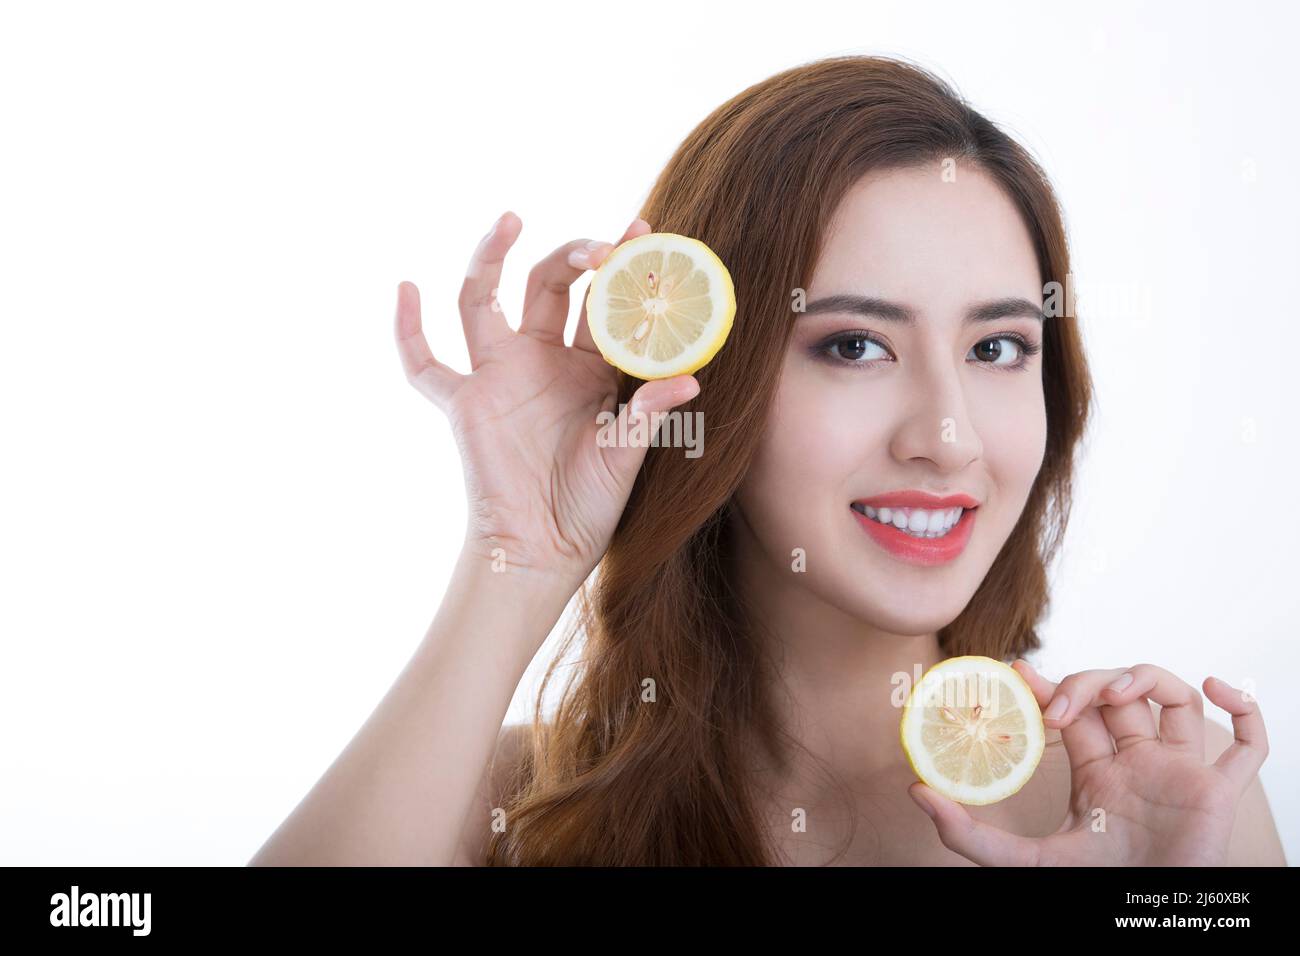 Hübsche junge Dame verspielt in Scheiben geschnittene Zitronen, auf weißem Hintergrund - Stock Foto Stockfoto